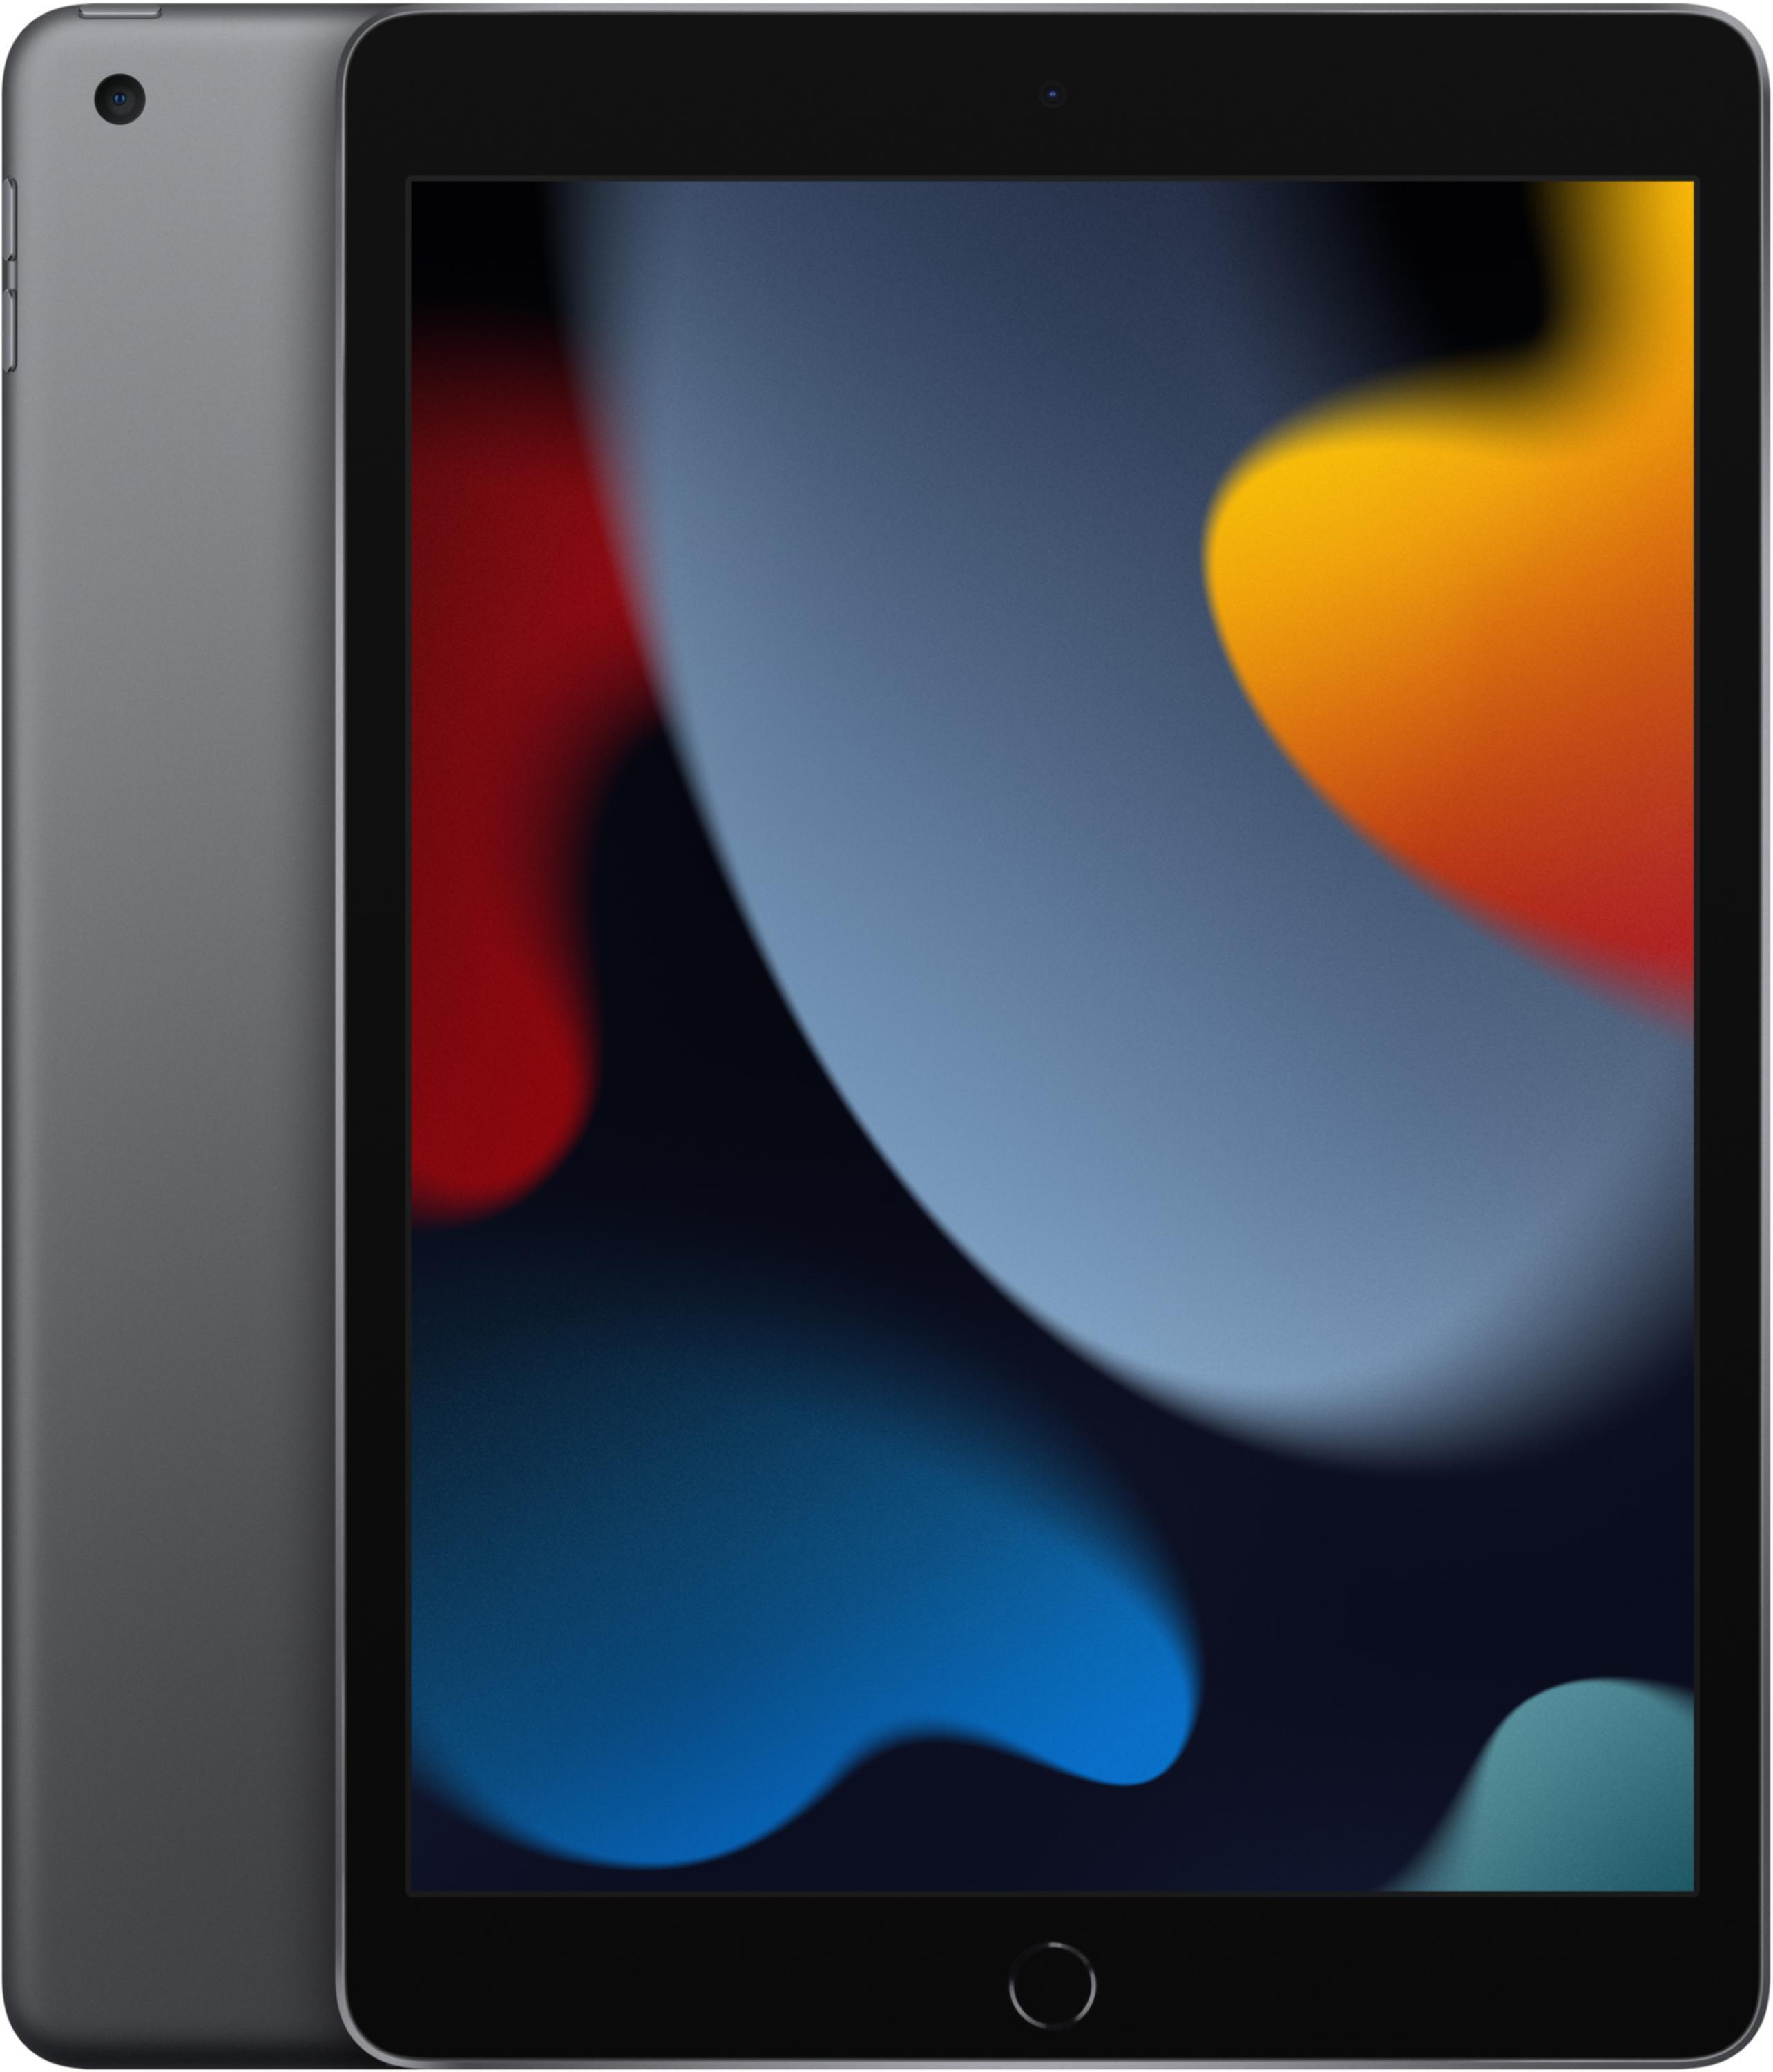 Apple iPad Air 2 Wi-Fi 32GB - Silver | Sweetwater